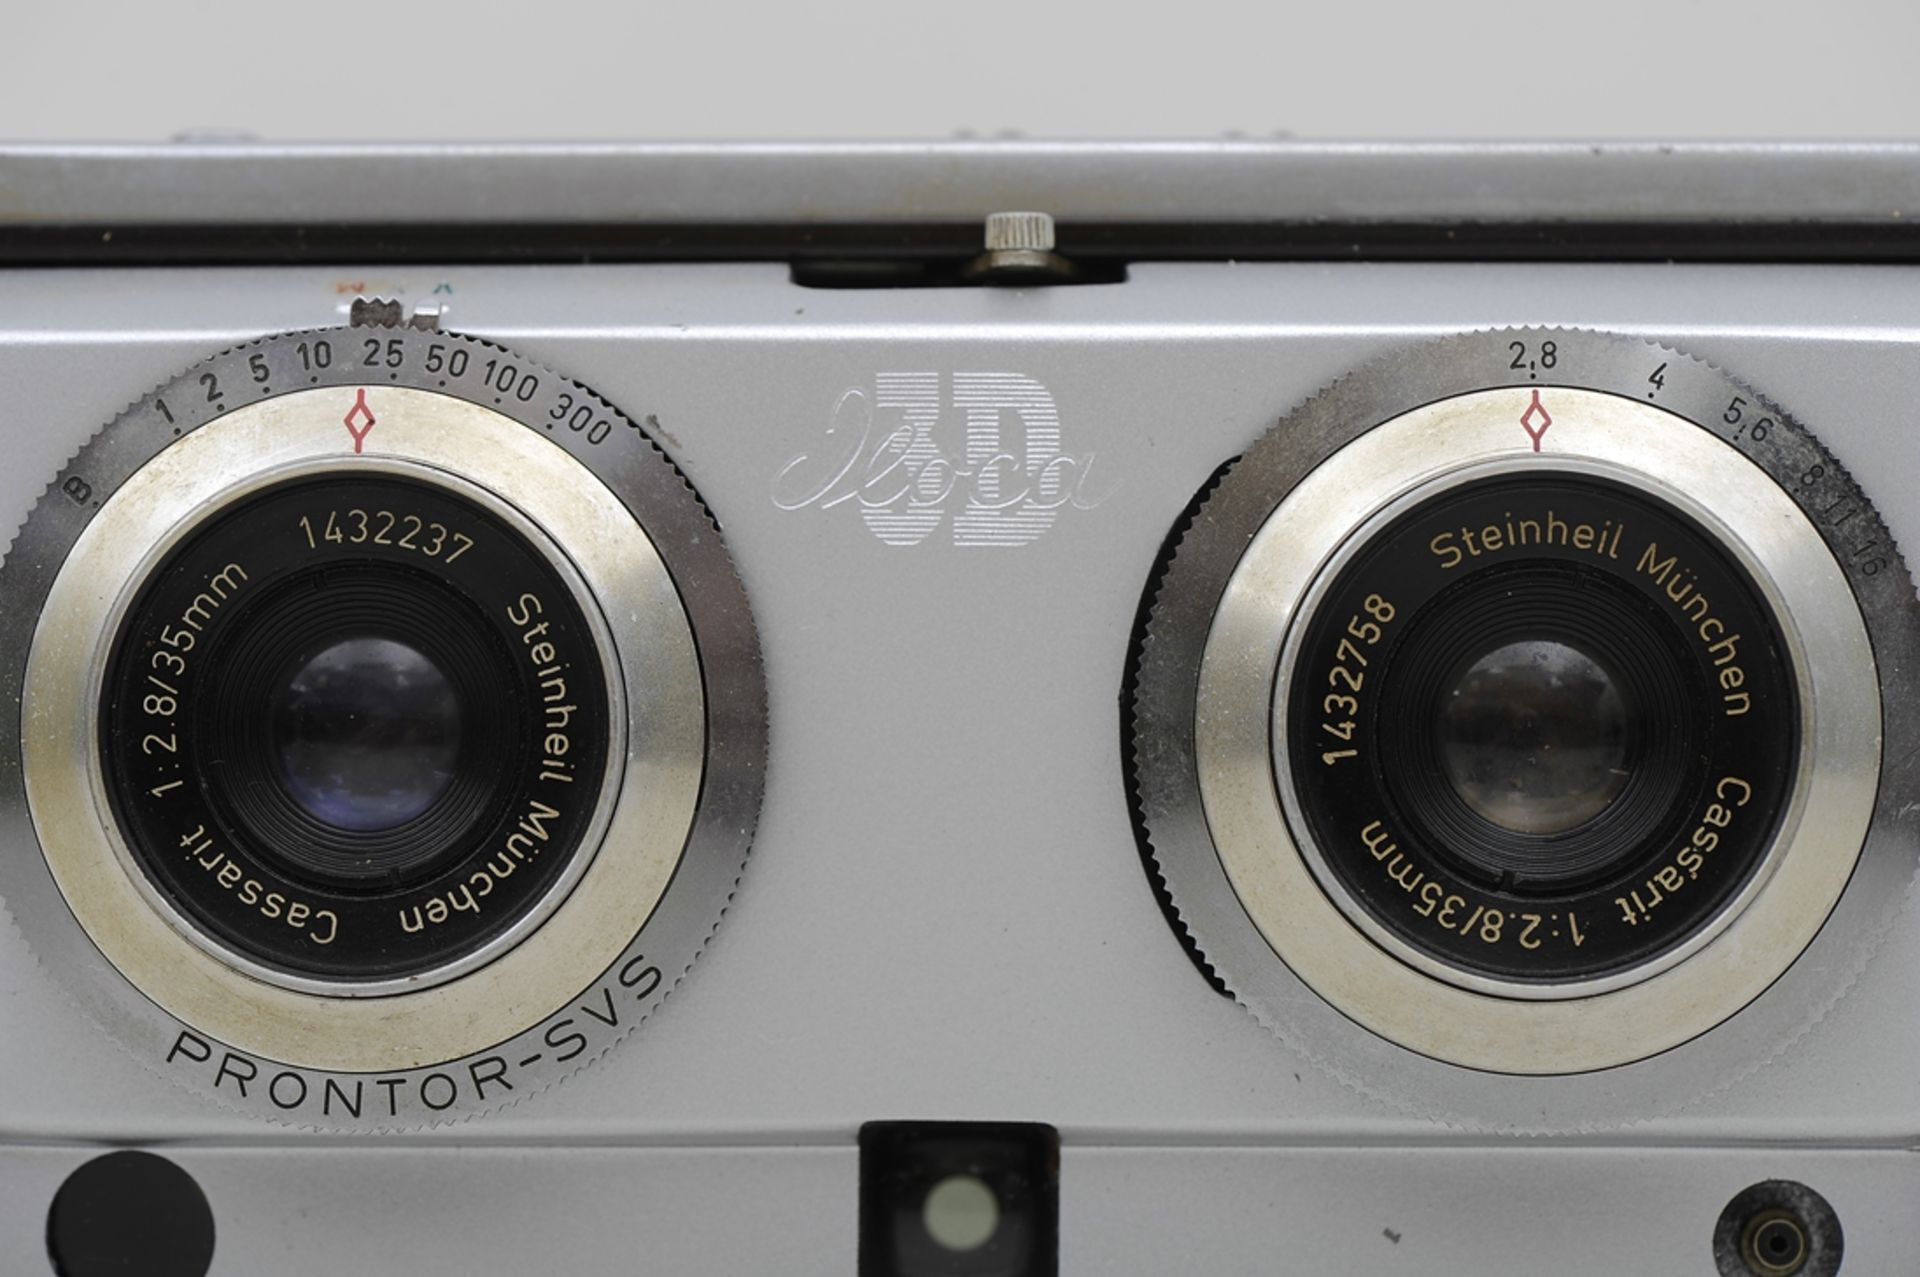 "ILOCA 3D" Stereo Rapid Kamera mit Steinheil Cassait-Objektiven 1:2,8/35 mm, No. 1432237 und 143275 - Image 7 of 7